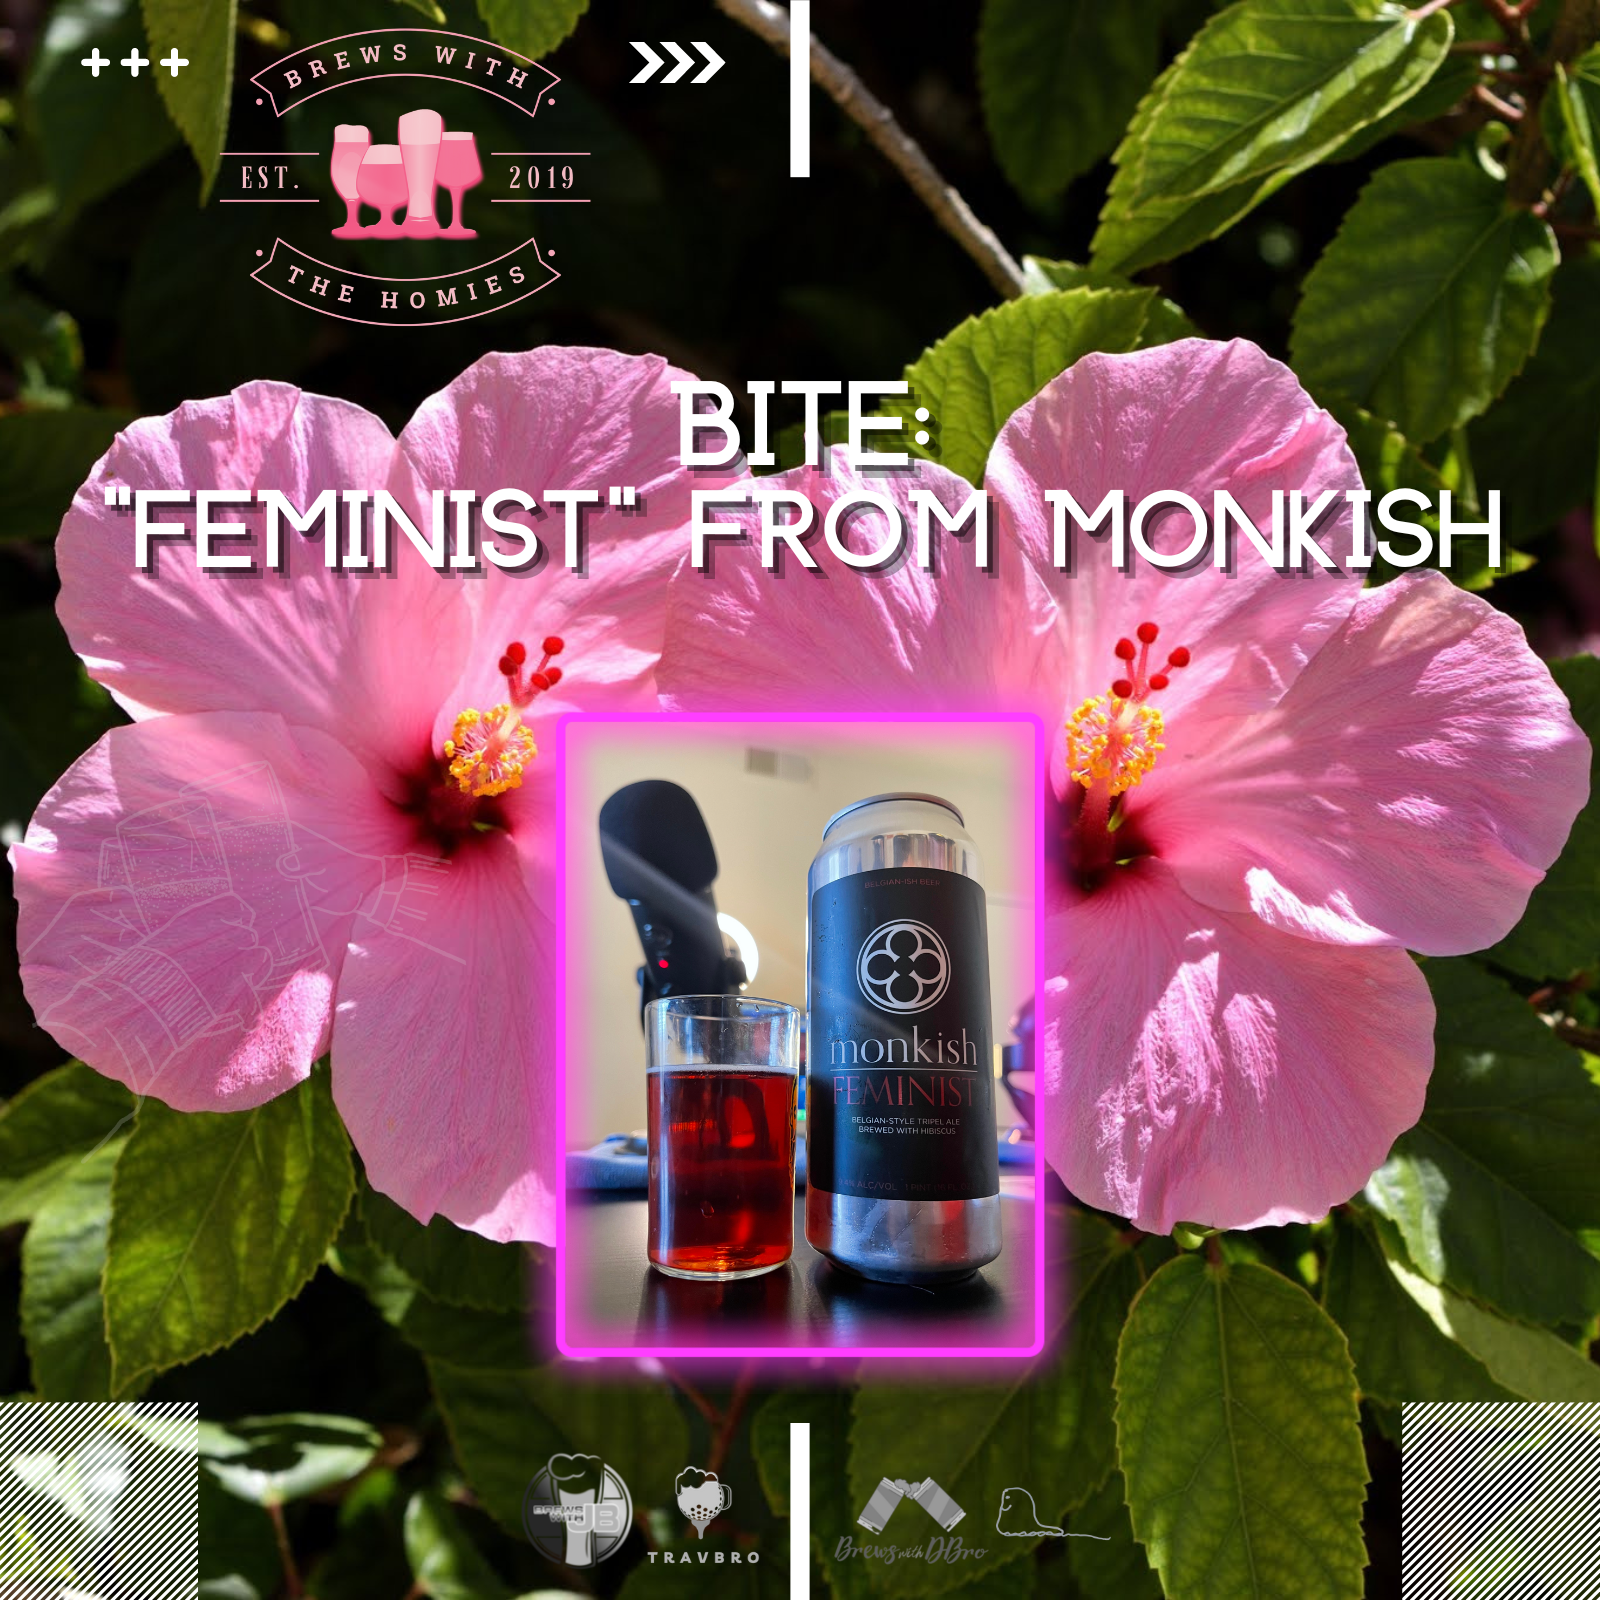 Beer in ten episode (BITE): "Feminist" from Monkish